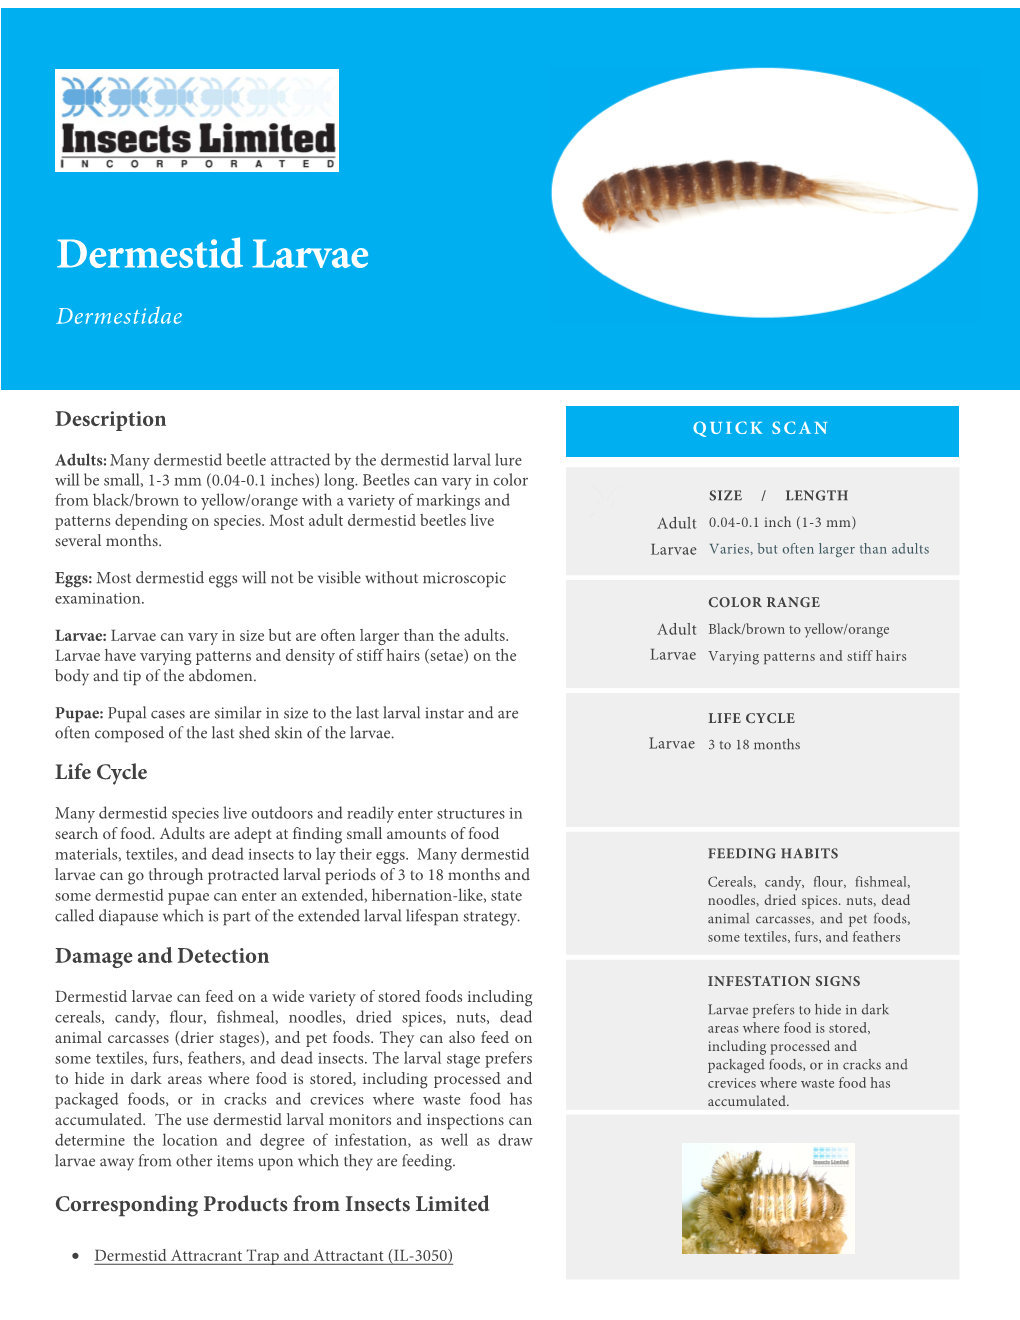 Dermestid Larvae